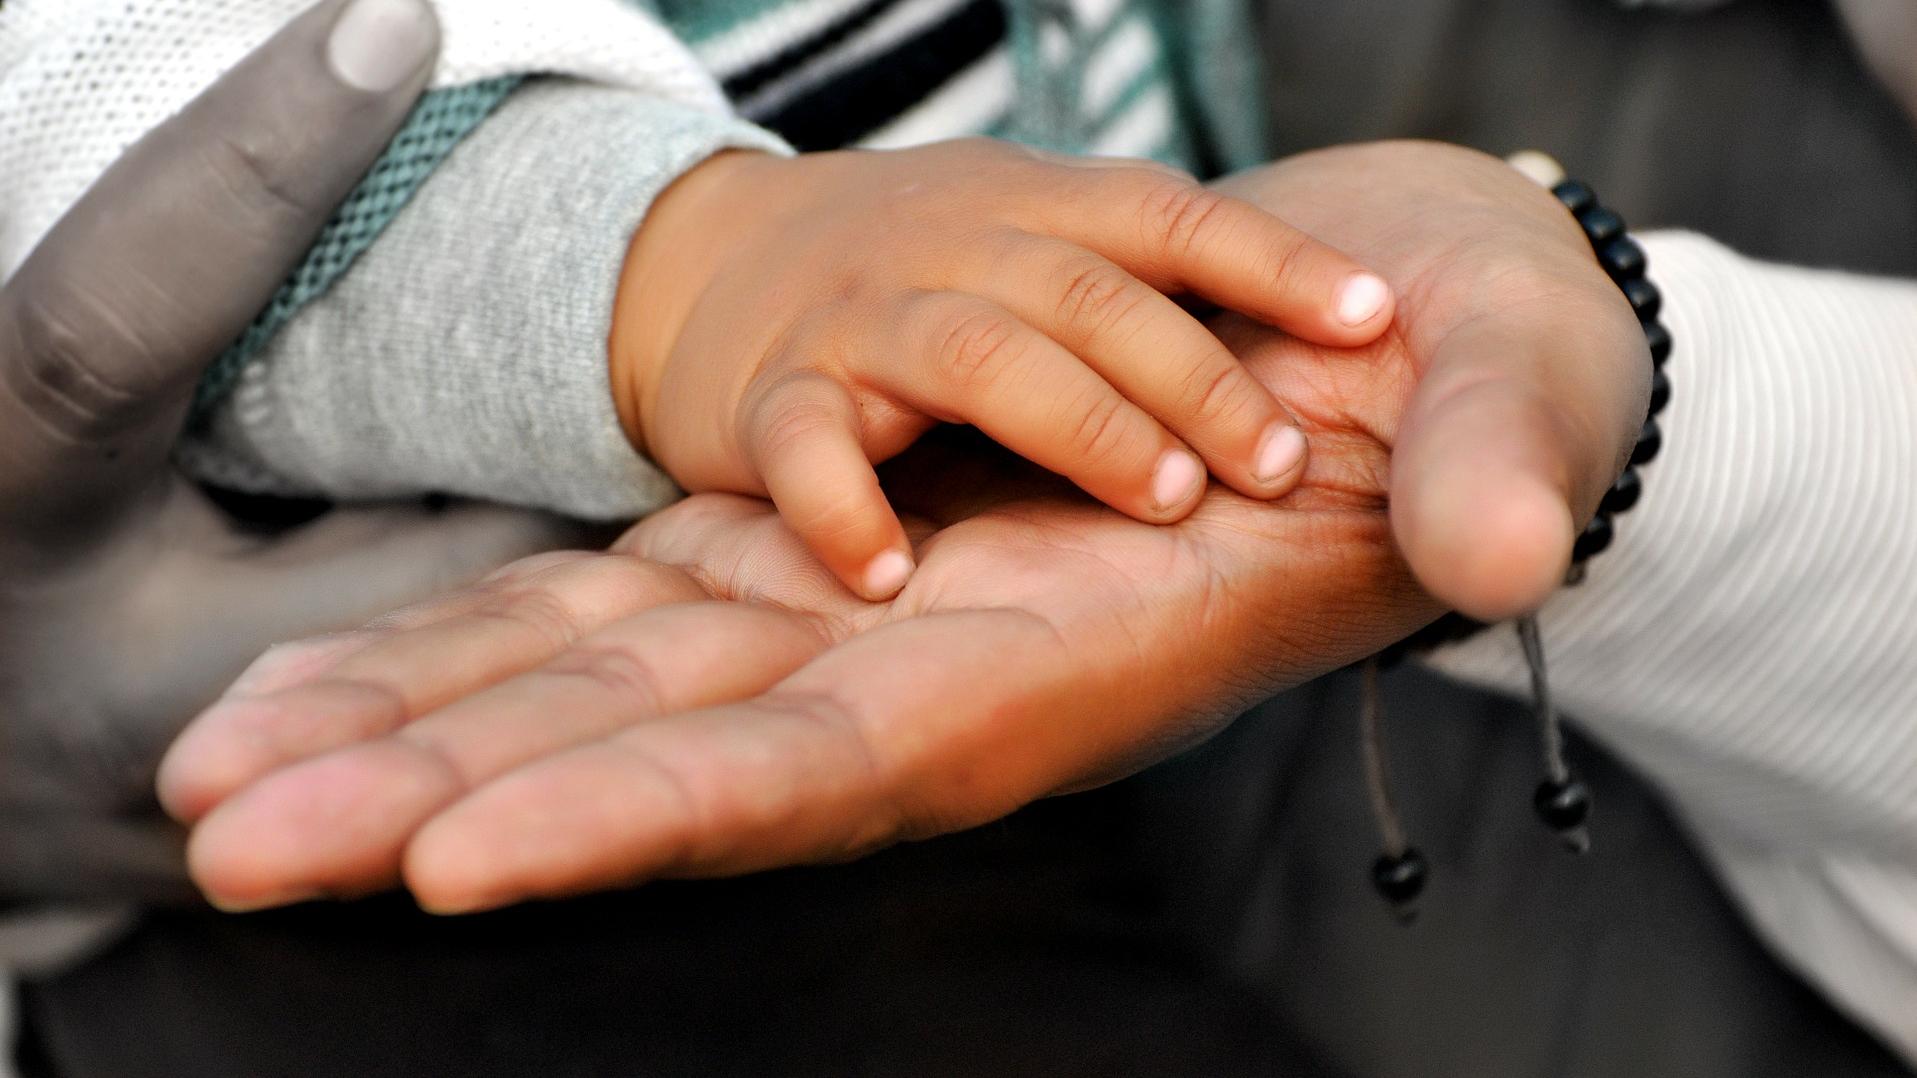 Stimmungsbild zum Beitrag: Eine Babyhand liegt auf der Hand eines Erwachsenen.